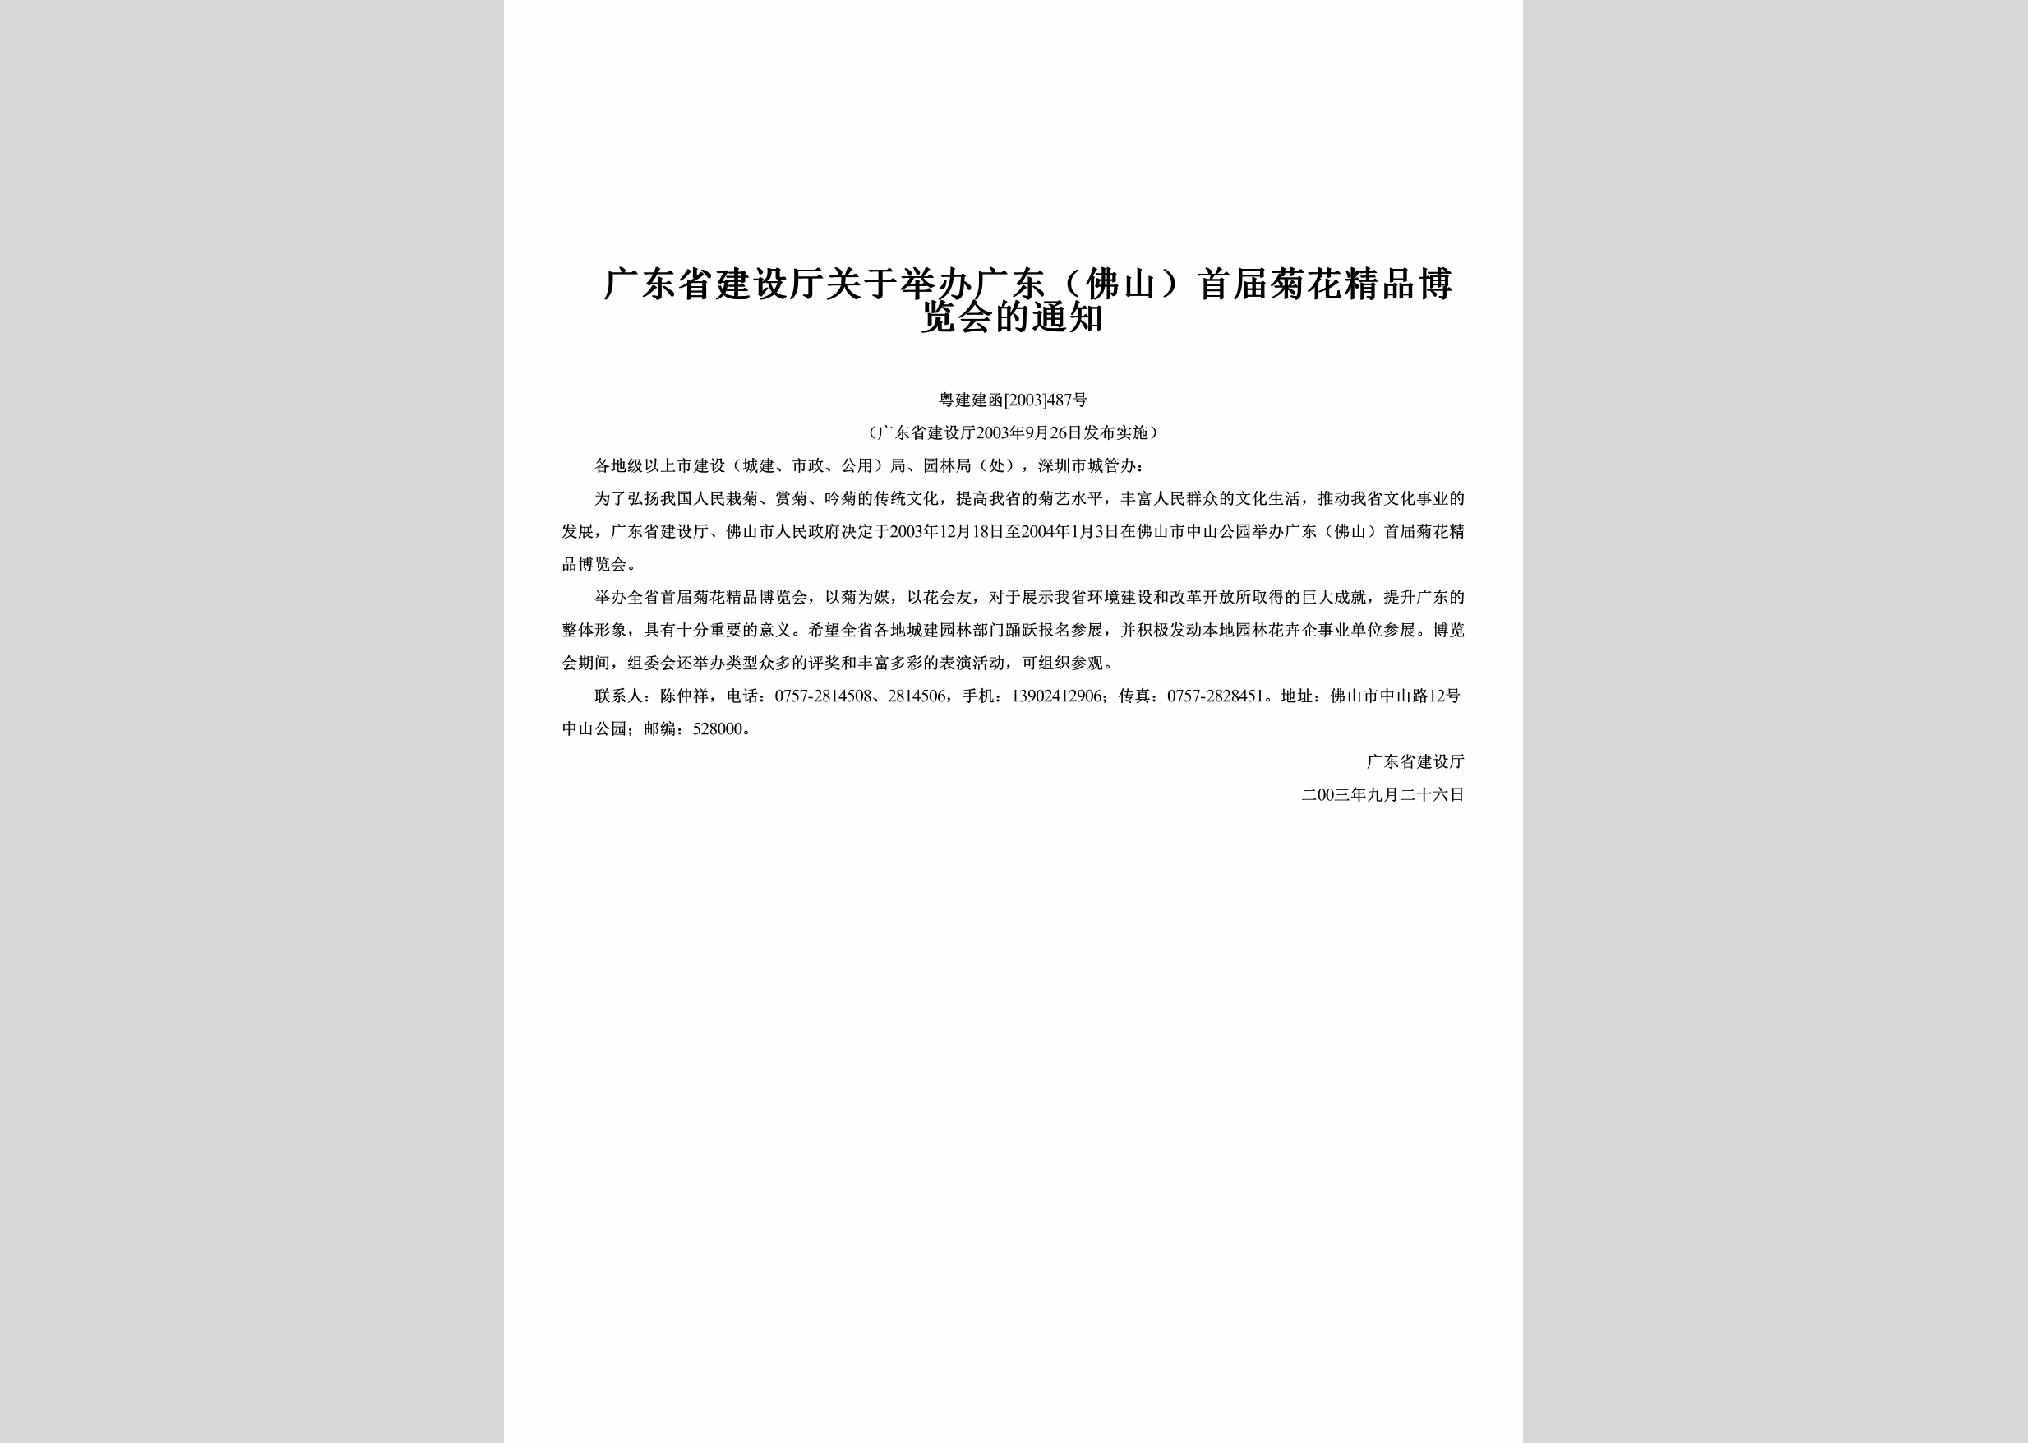 粤建建函[2003]487号：关于举办广东（佛山）首届菊花精品博览会的通知